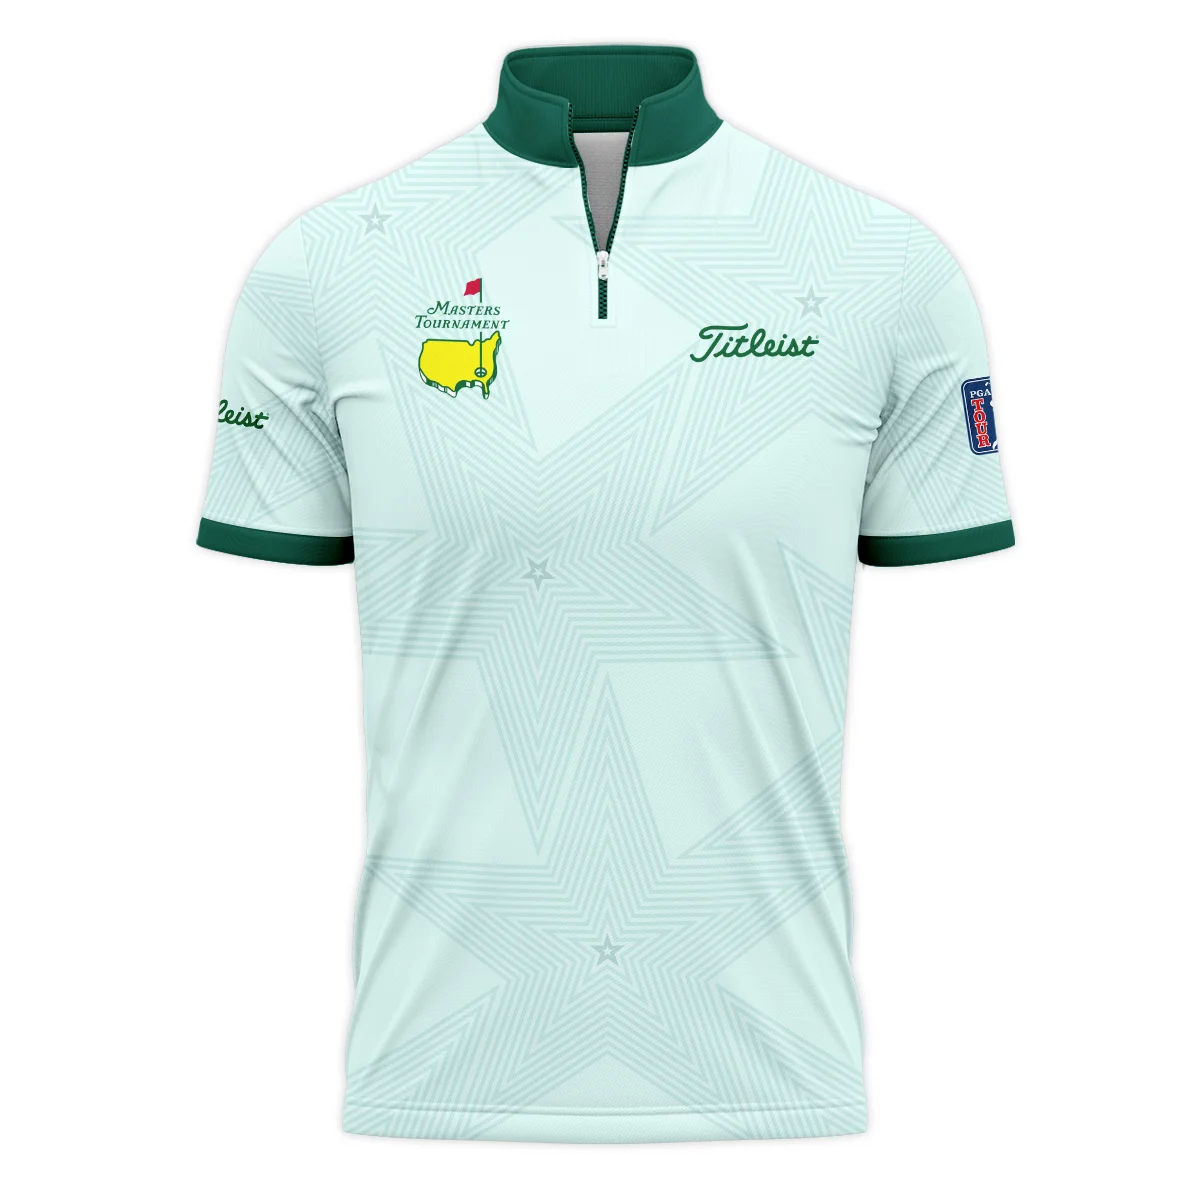 Golf Love Star Light Green Mix Masters Tournament Titlest Zipper Hoodie Shirt Style Classic